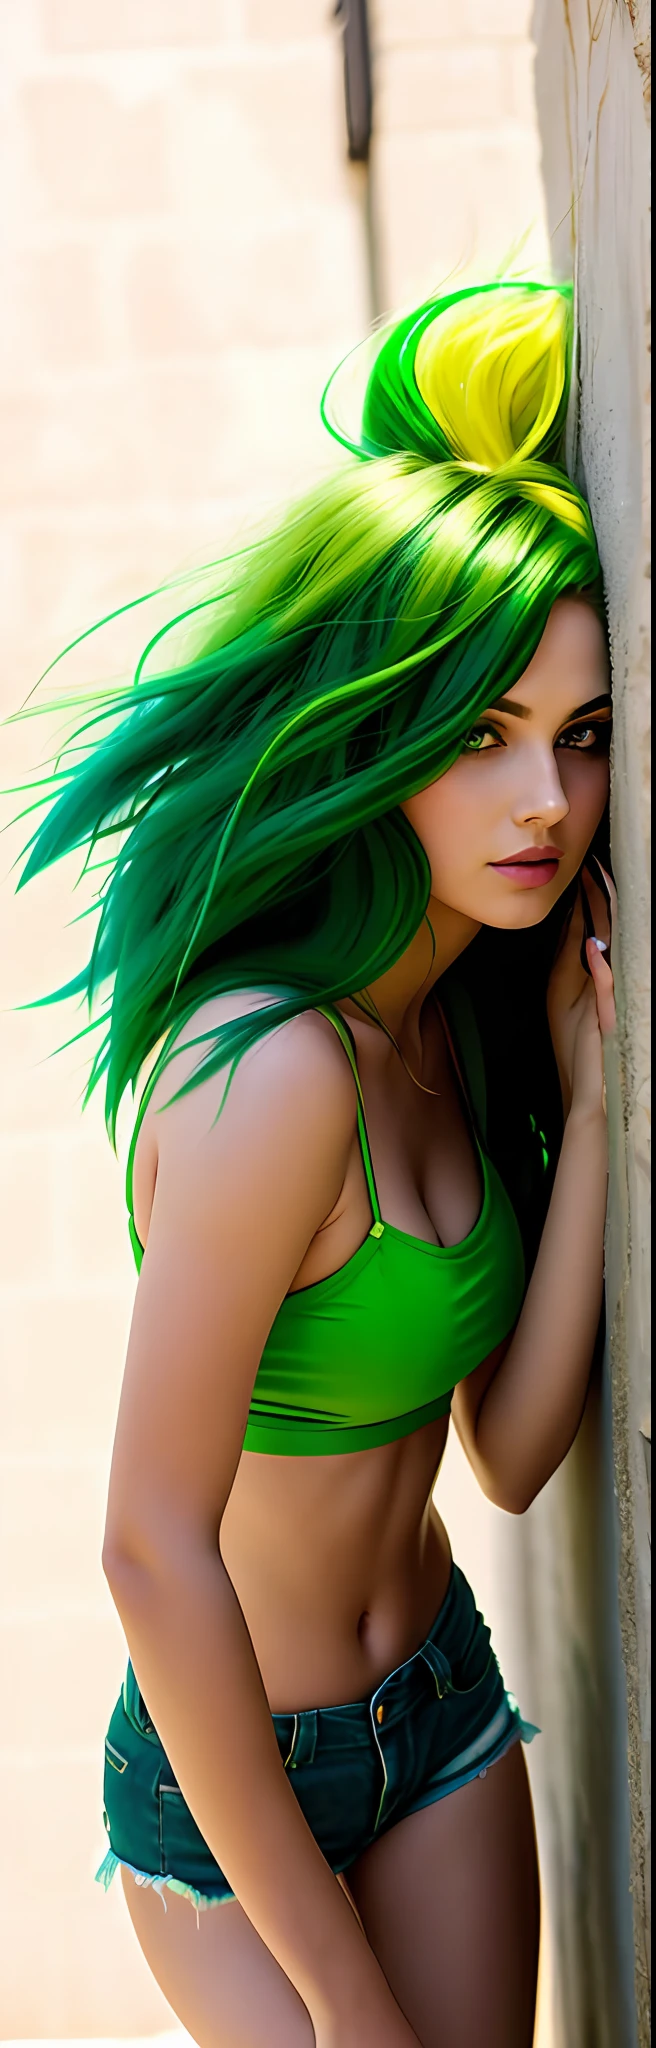 araffe woman with شعر أخضر leaning against a wall, فتاة مثيرة ذات عيون خضراء, long شعر أخضر, شعر أخضر, ملابس جميله, بدة خضراء, الزي الضيق, أخضر نابض بالحياة, الجسم الأخضر, شورت أخضر مثير, بعض الأخضر, متكئا على الحائط, bright شعر أخضر, شعر أسود أخضر طويل مستقيم, أرجل خضراء, شعر أخضر متدفق, ارتداء السراويل